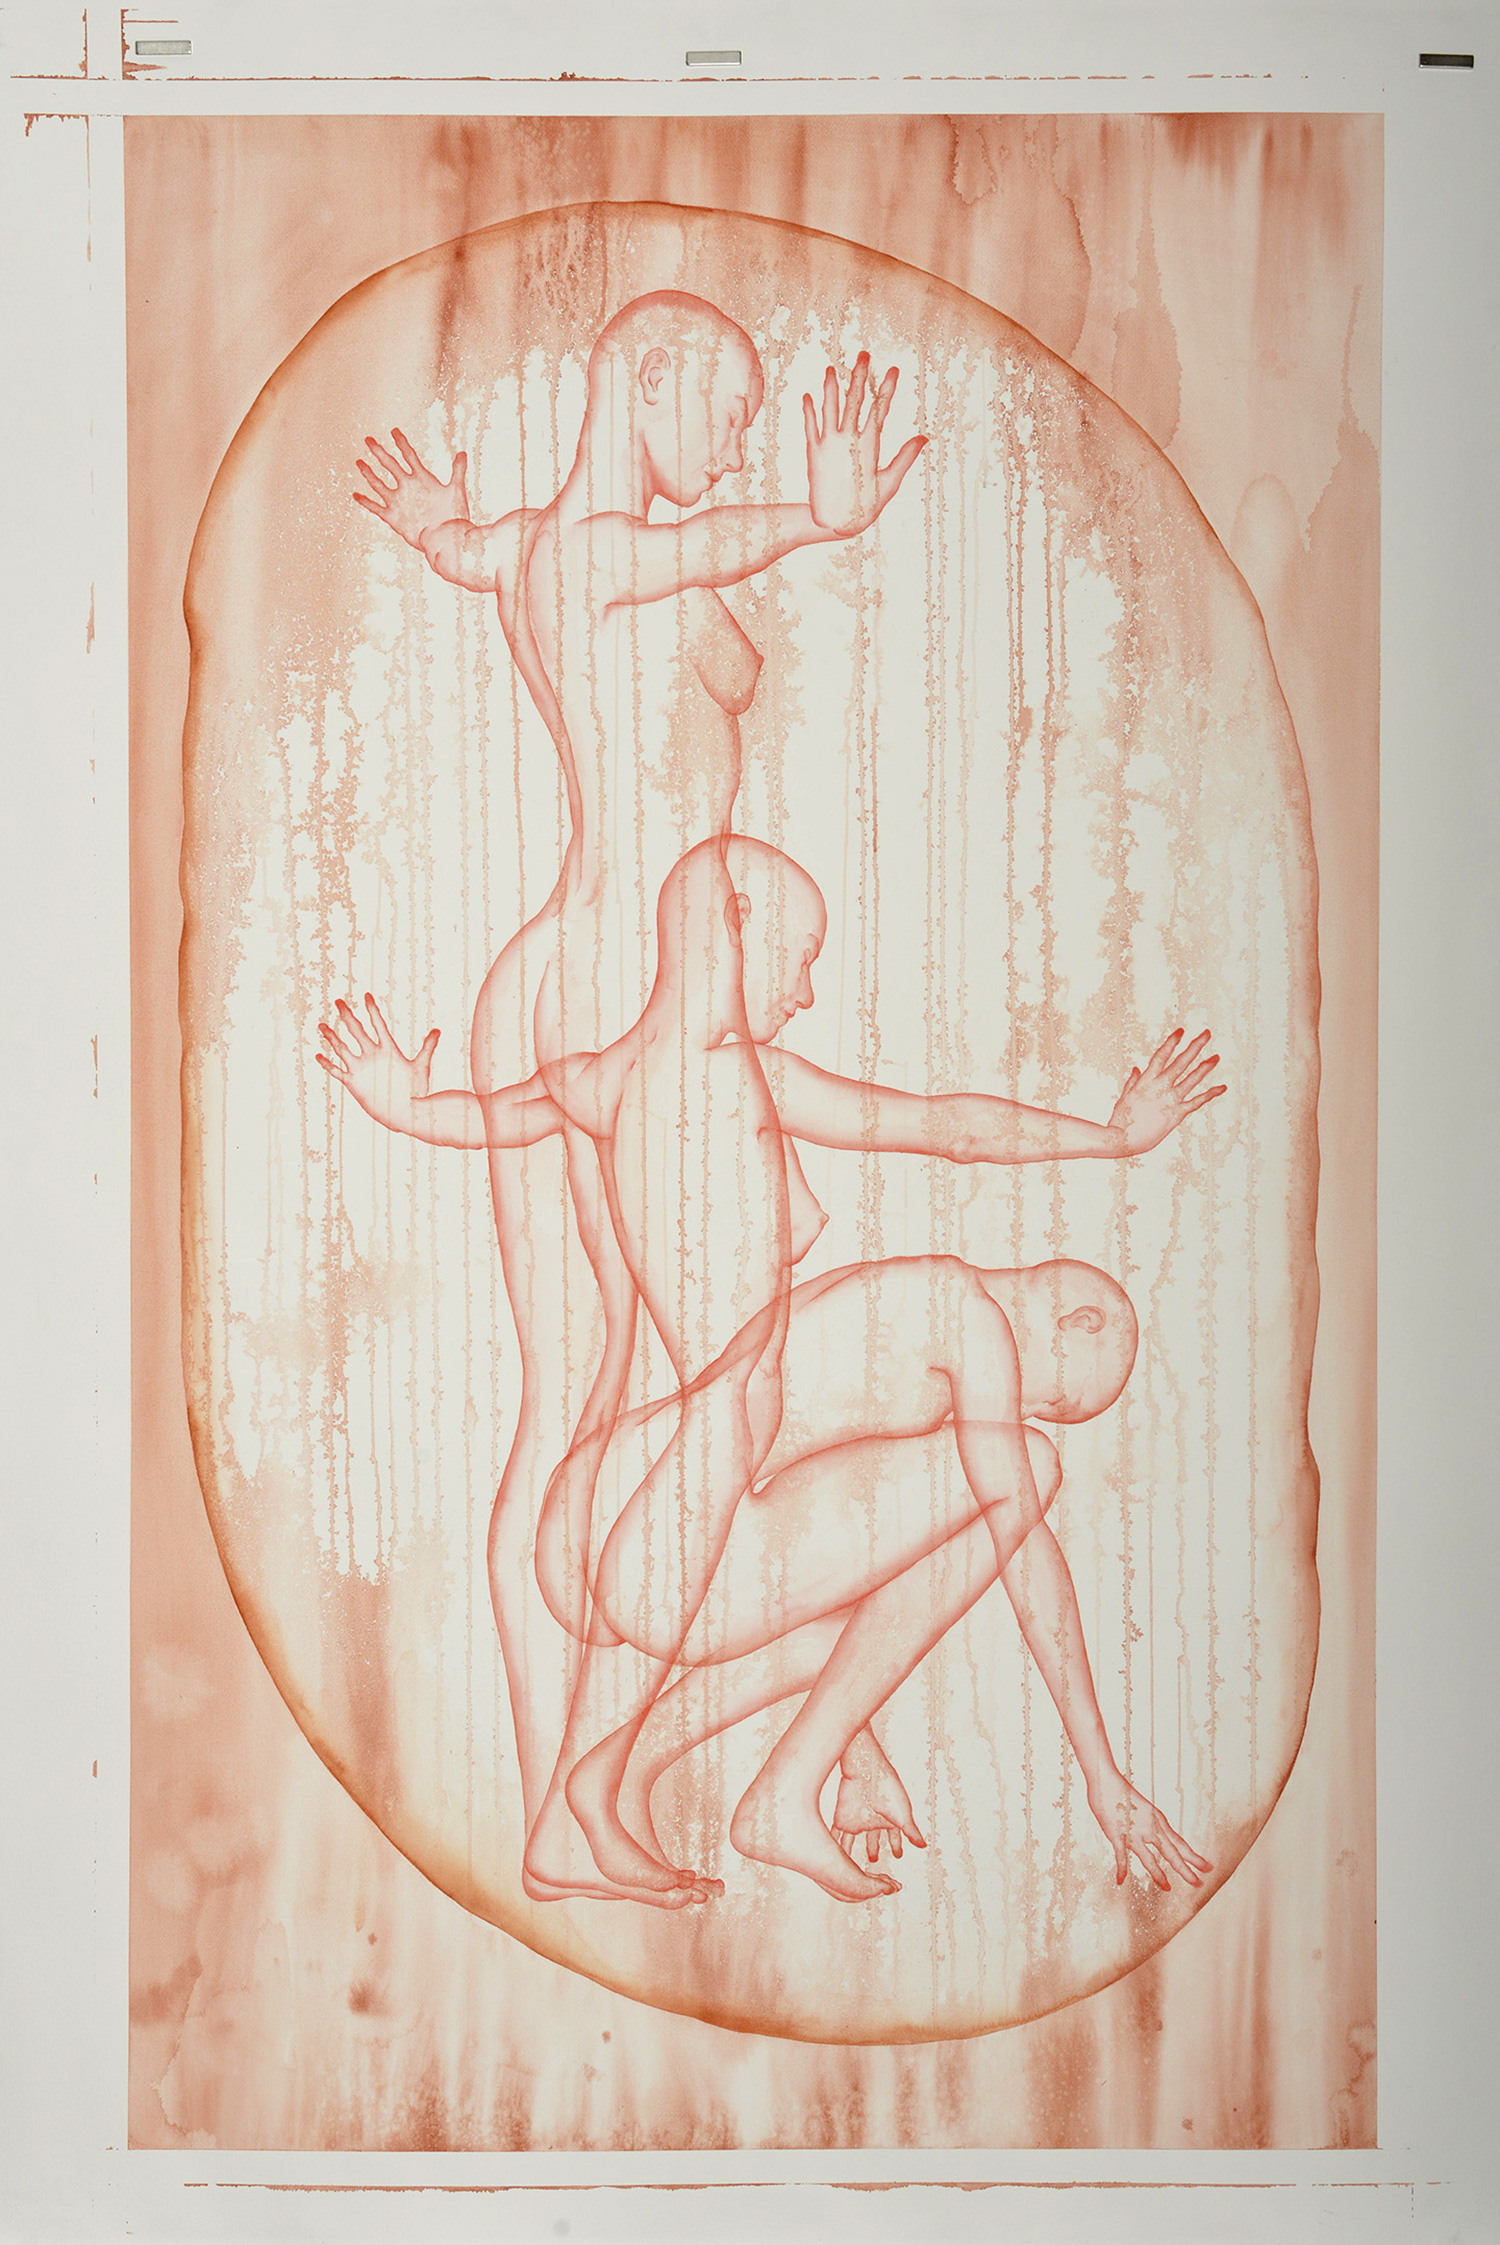 Stefano Bolzano, Aura sentimentale, watercolor on paper, 90x145 cm, 2020.